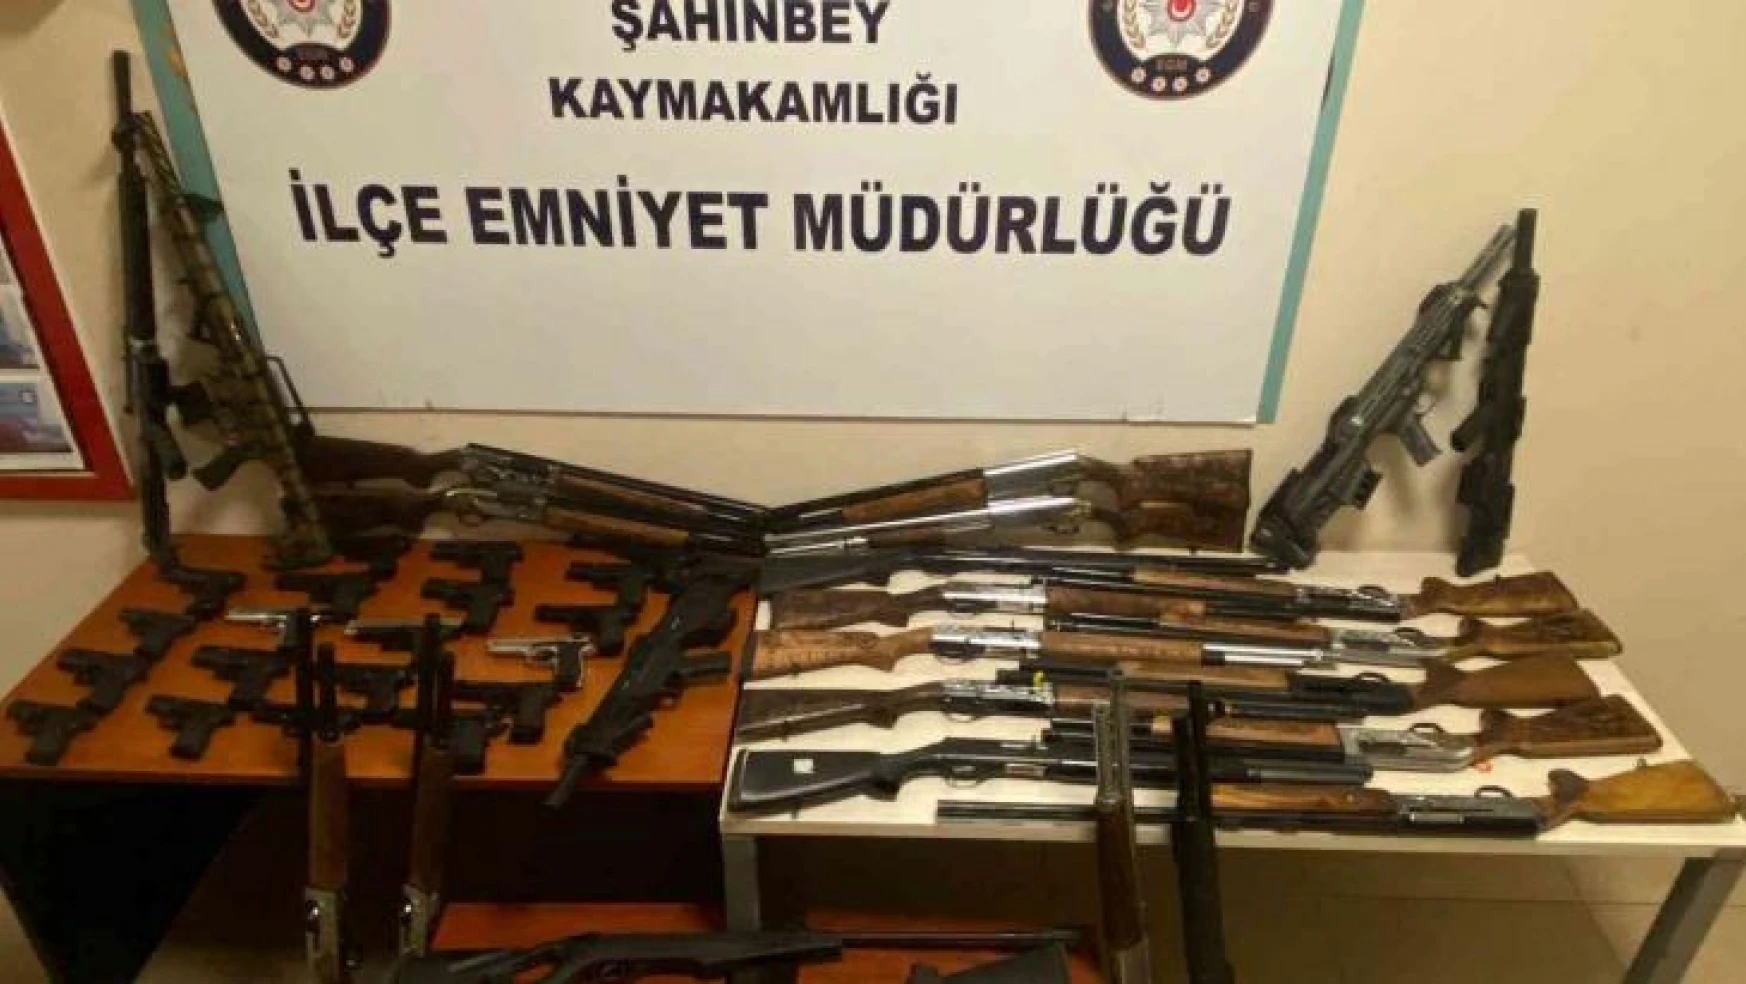 Gaziantep'te kaçak silah çetesi çökertildi: 46 silah ele geçirildi